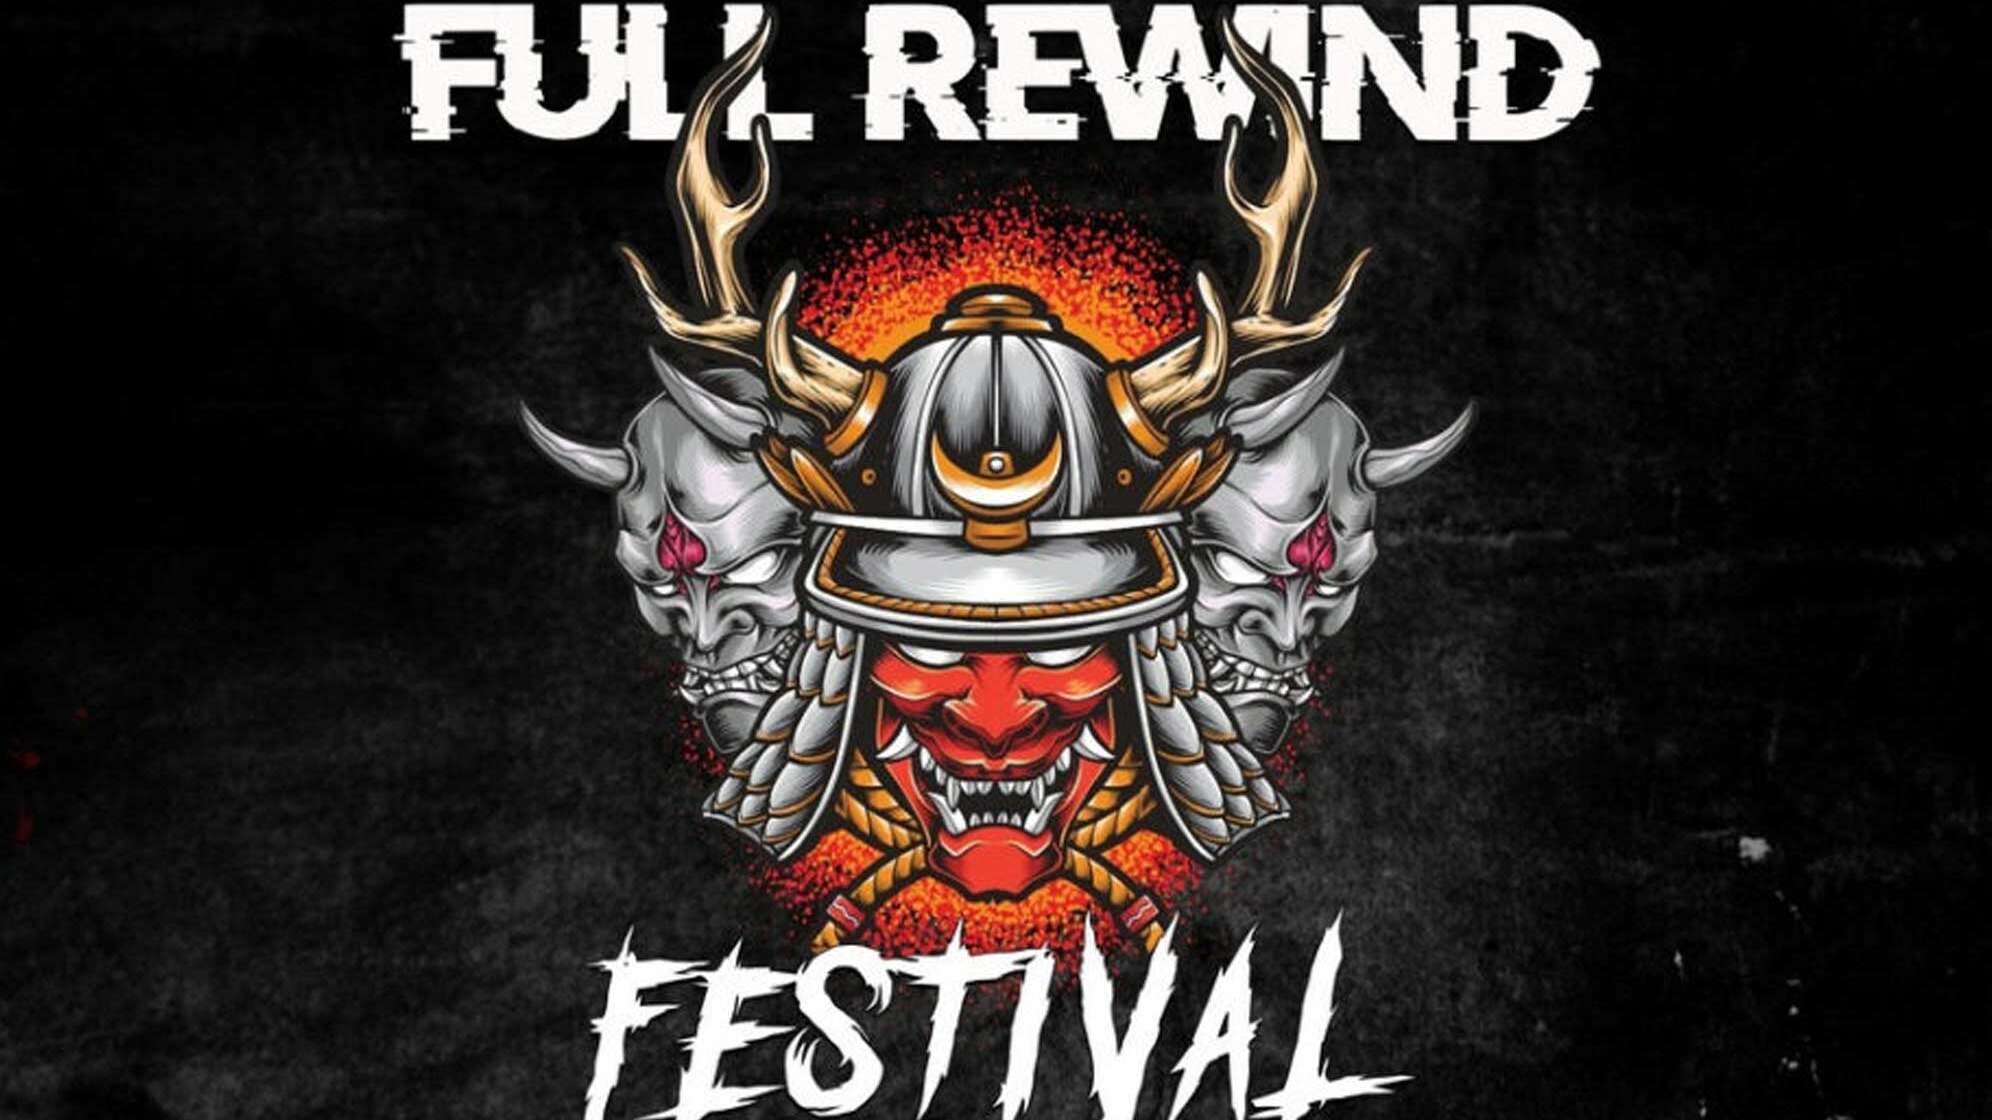 Das Logo vom Full Rewind Festival mit einem Krieger und Schrift